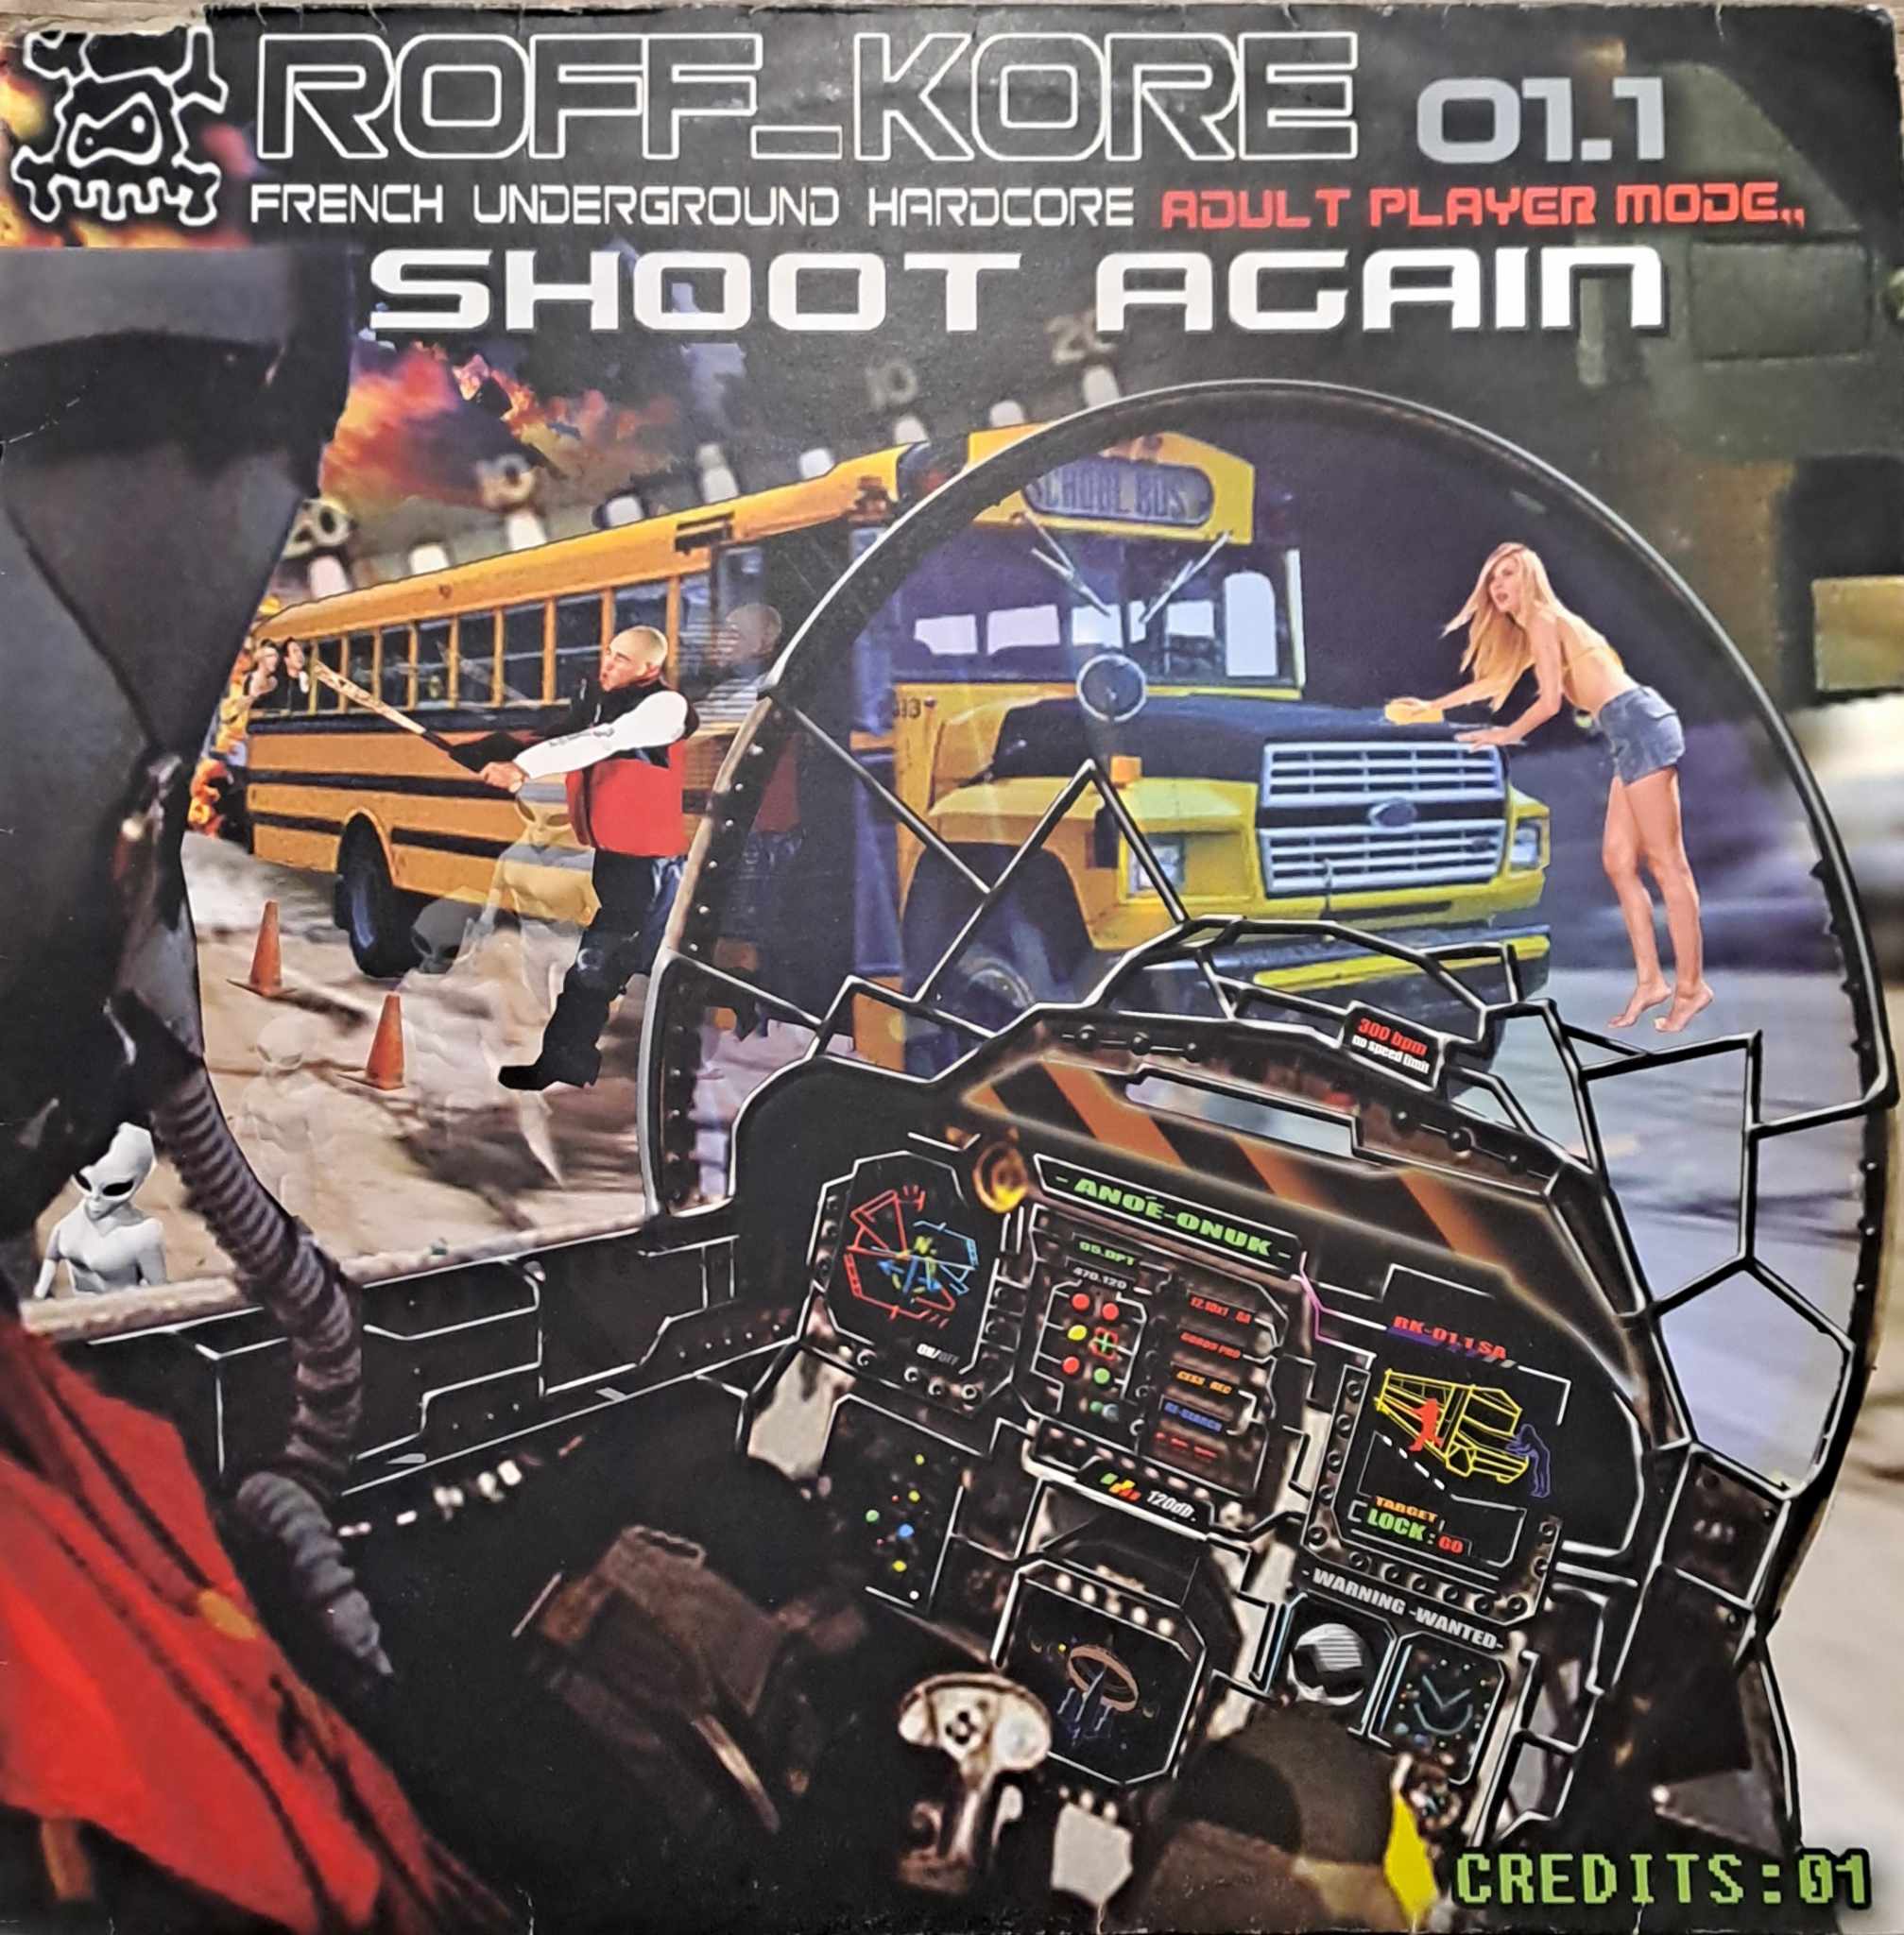 RoffKore Records 01.1 - vinyle hardcore